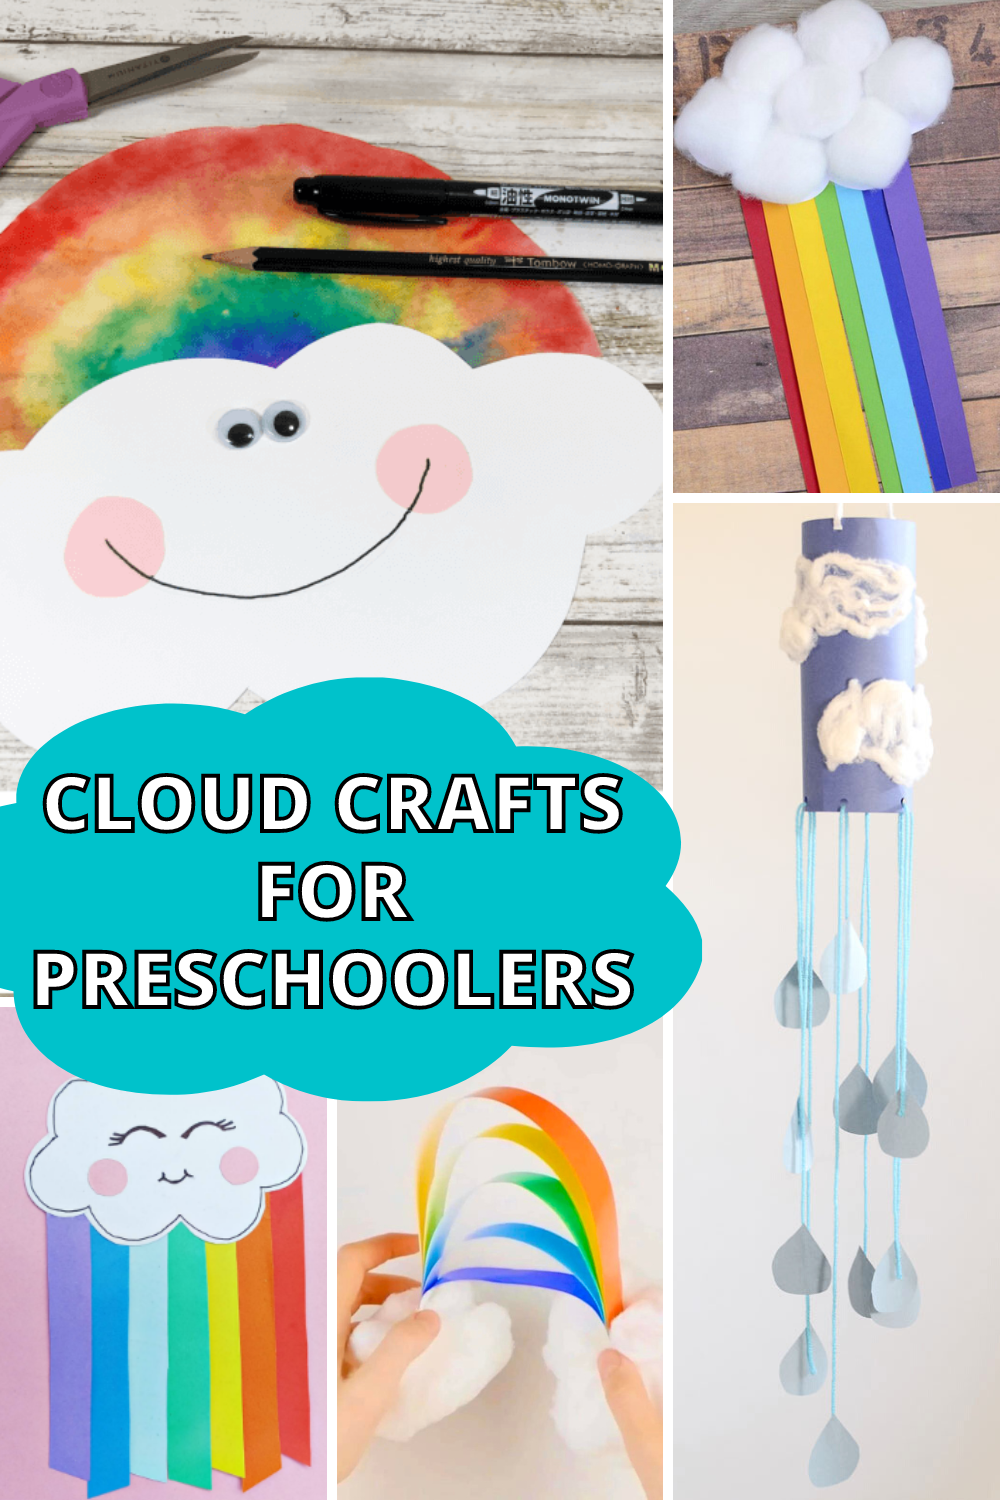 Cloud crafts for preschoolers